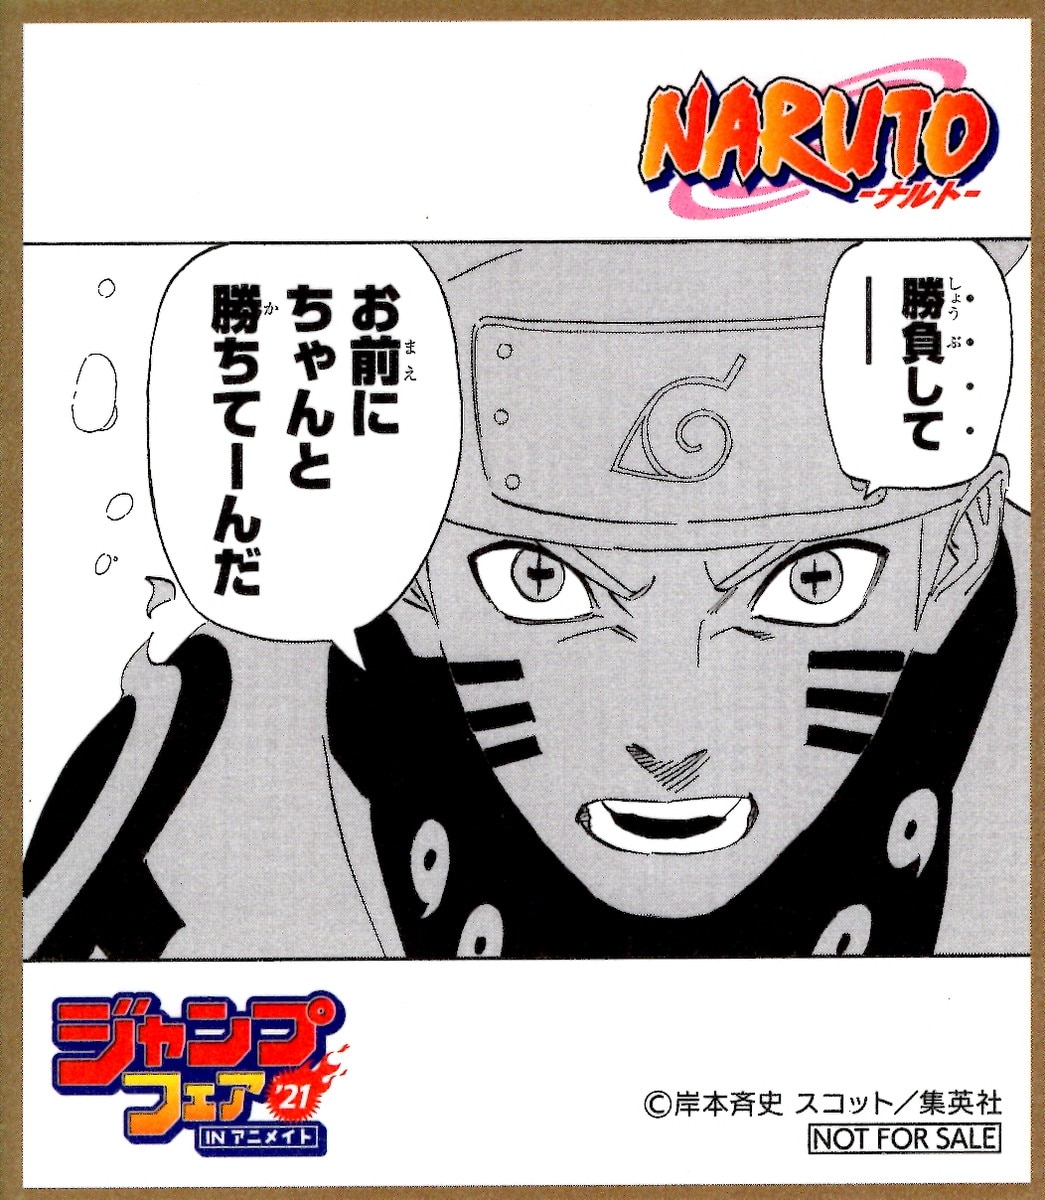 集英社 ジャンプフェア 21inアニメイト ミニ色紙 Naruto まんだらけ Mandarake